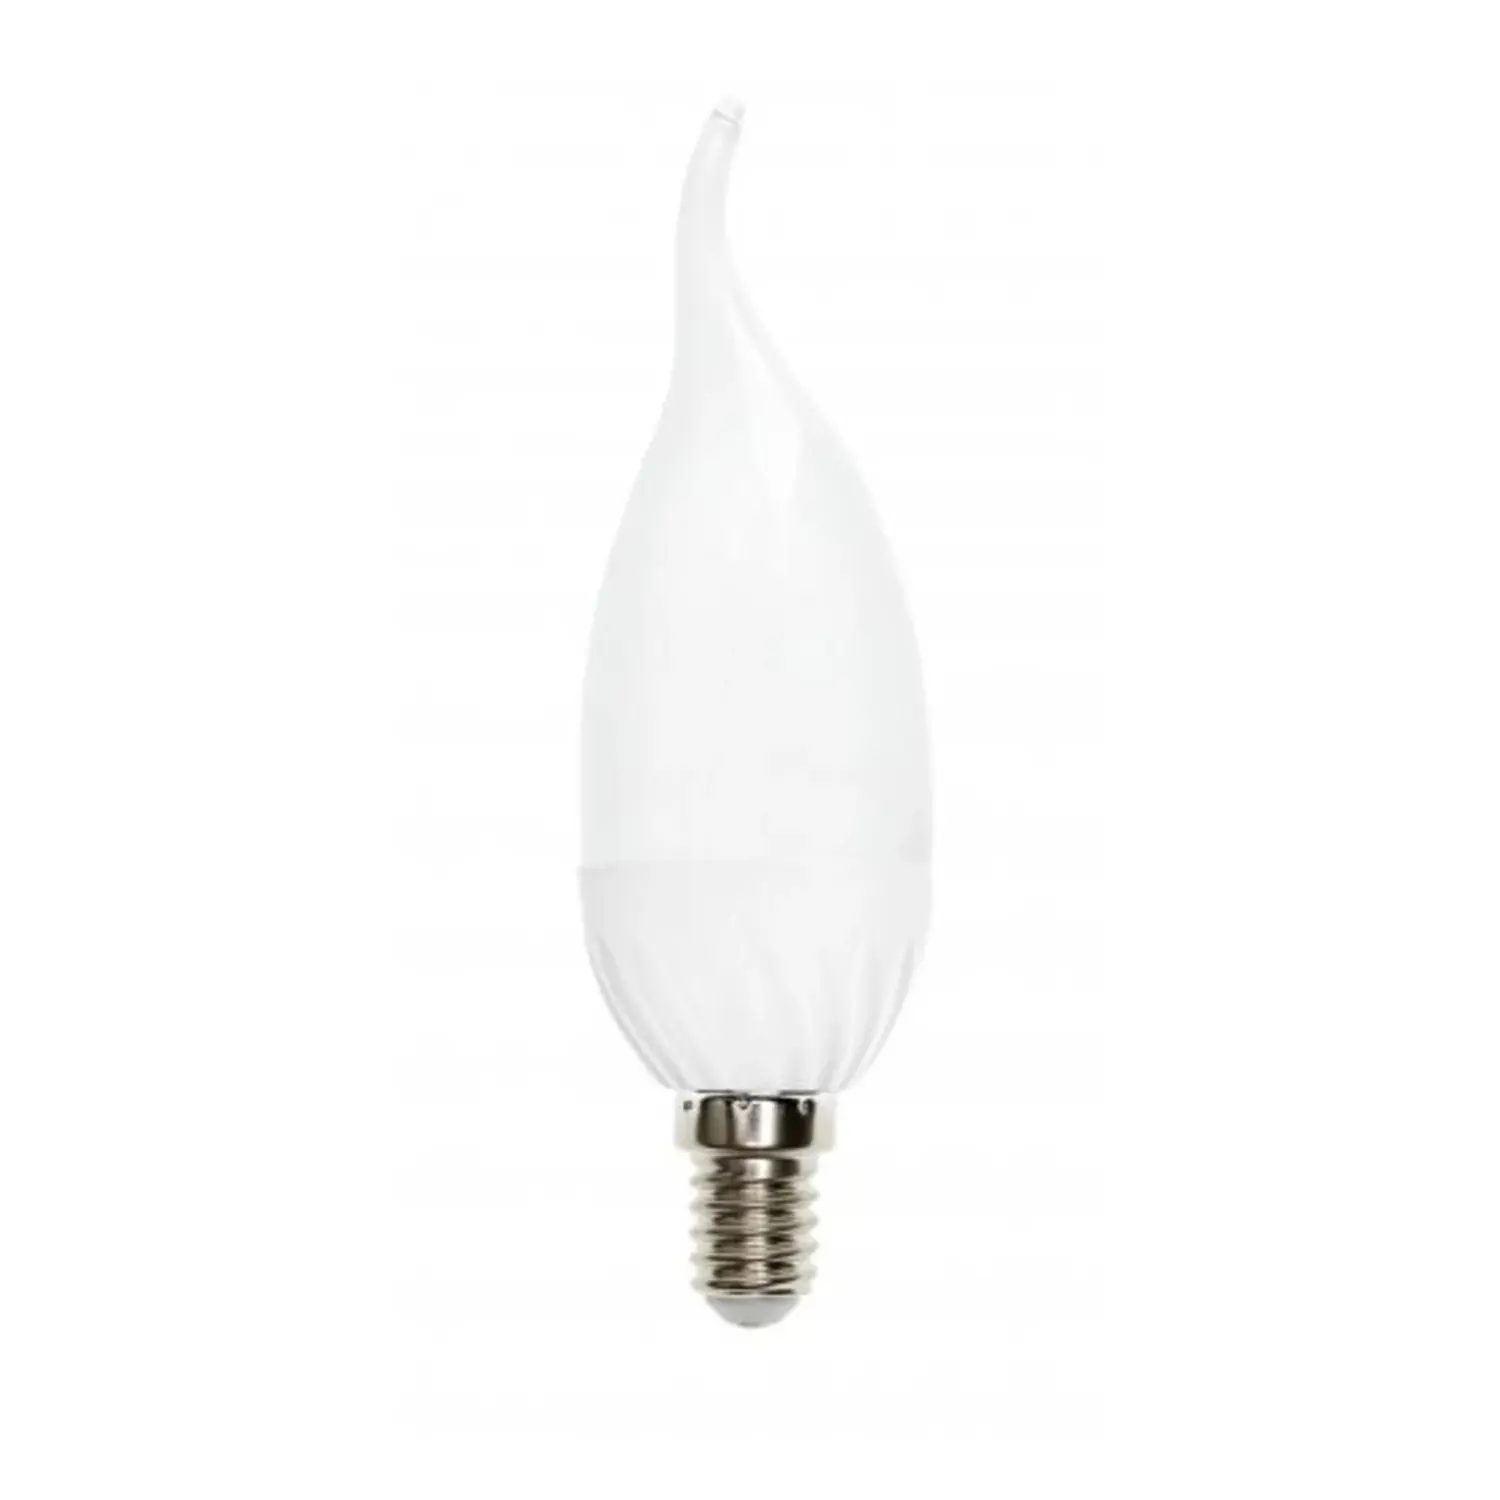 immagine del prodotto lampadina led candela soffio di vento e14 4 watt bianco freddo